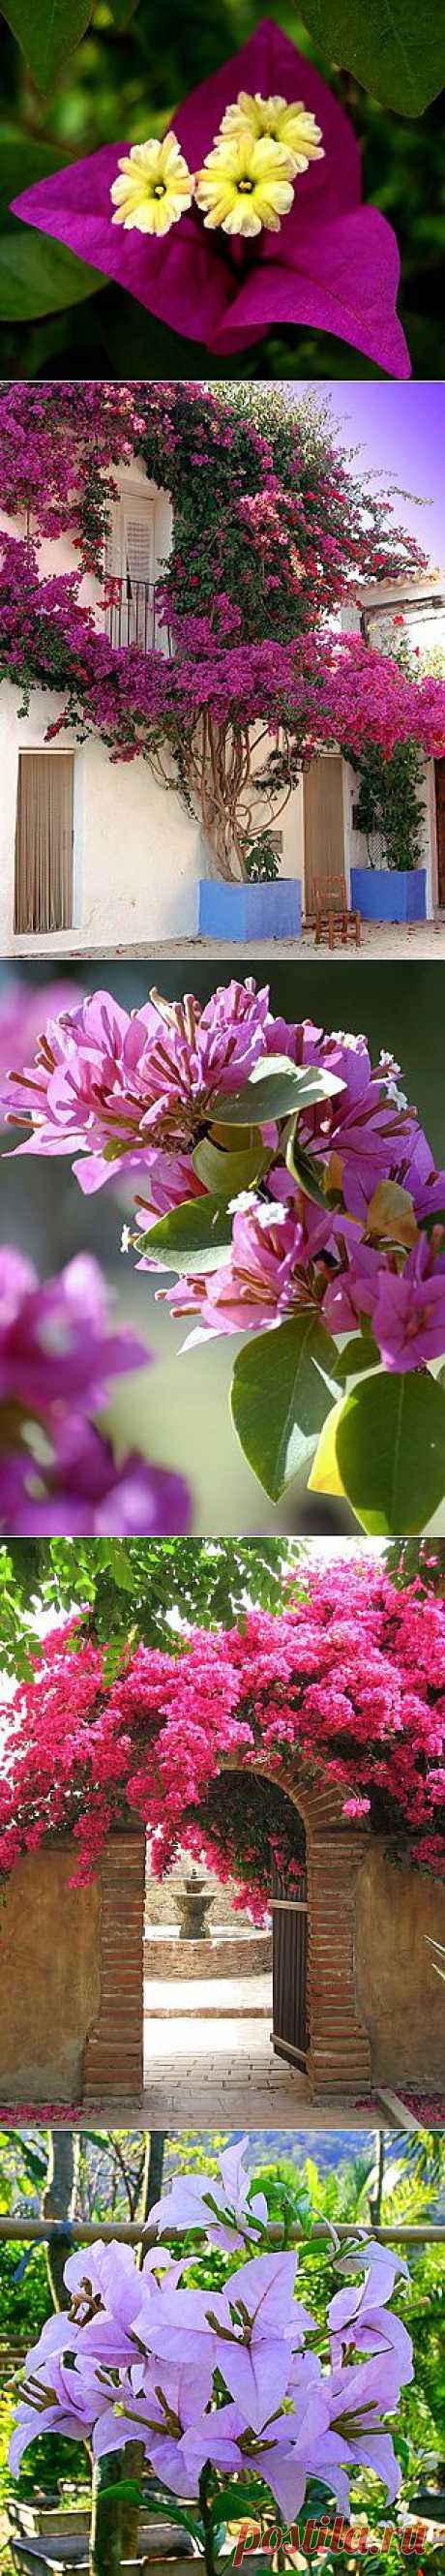 Бугенвиллия - очаровательное растение..